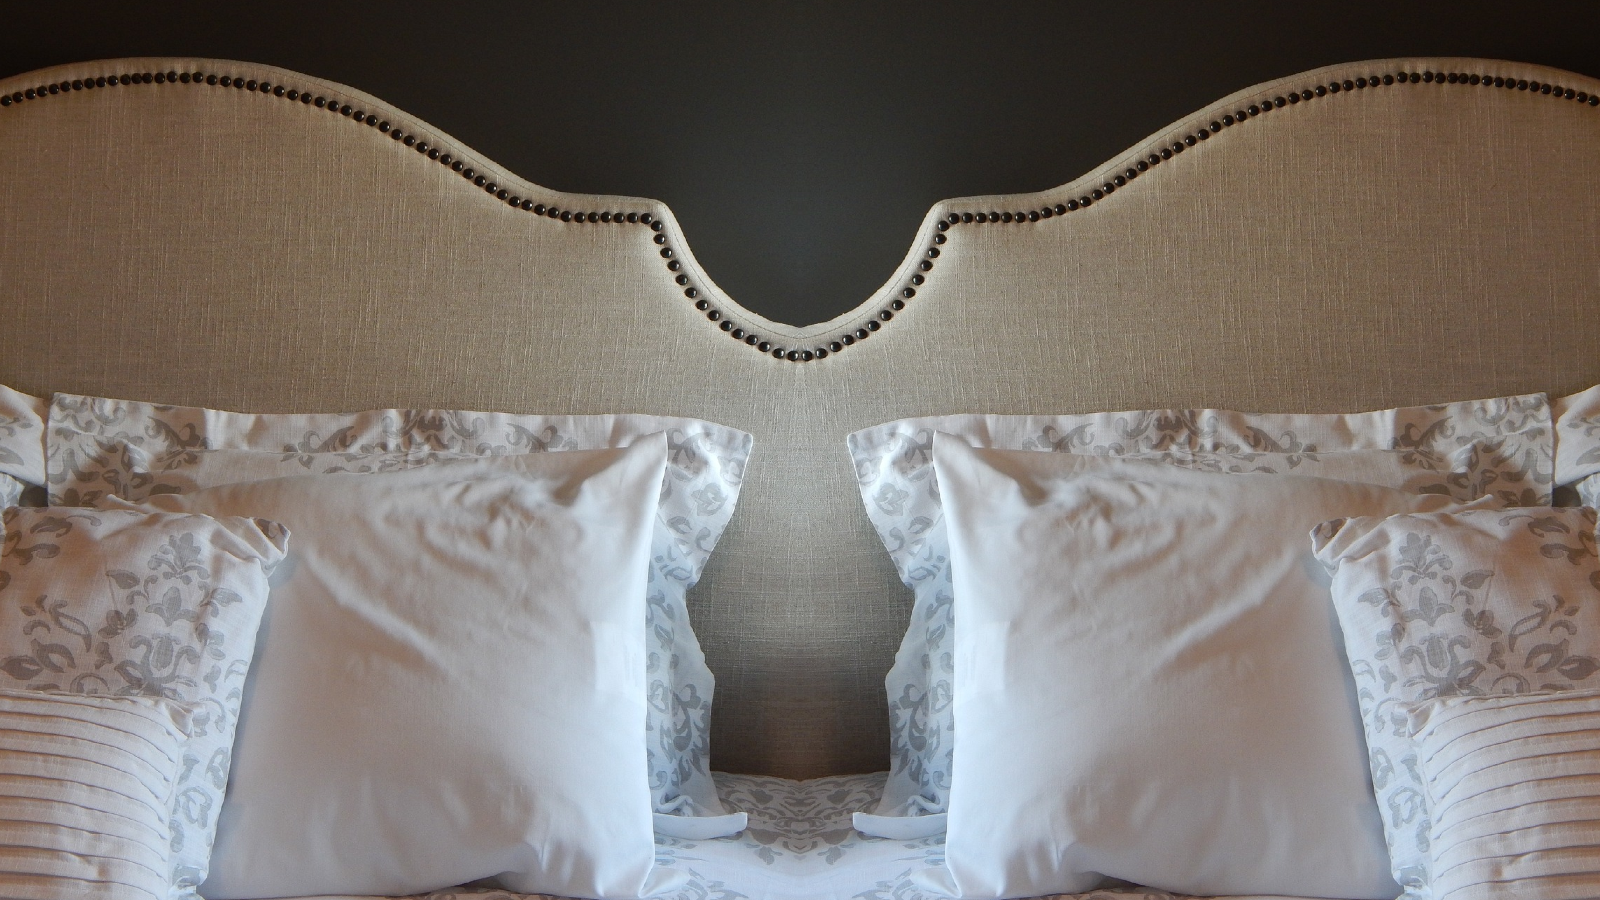 Detalji pomoću kojih lako možete transformirati svoju spavaću sobu u raskošnu i udobnu oazu